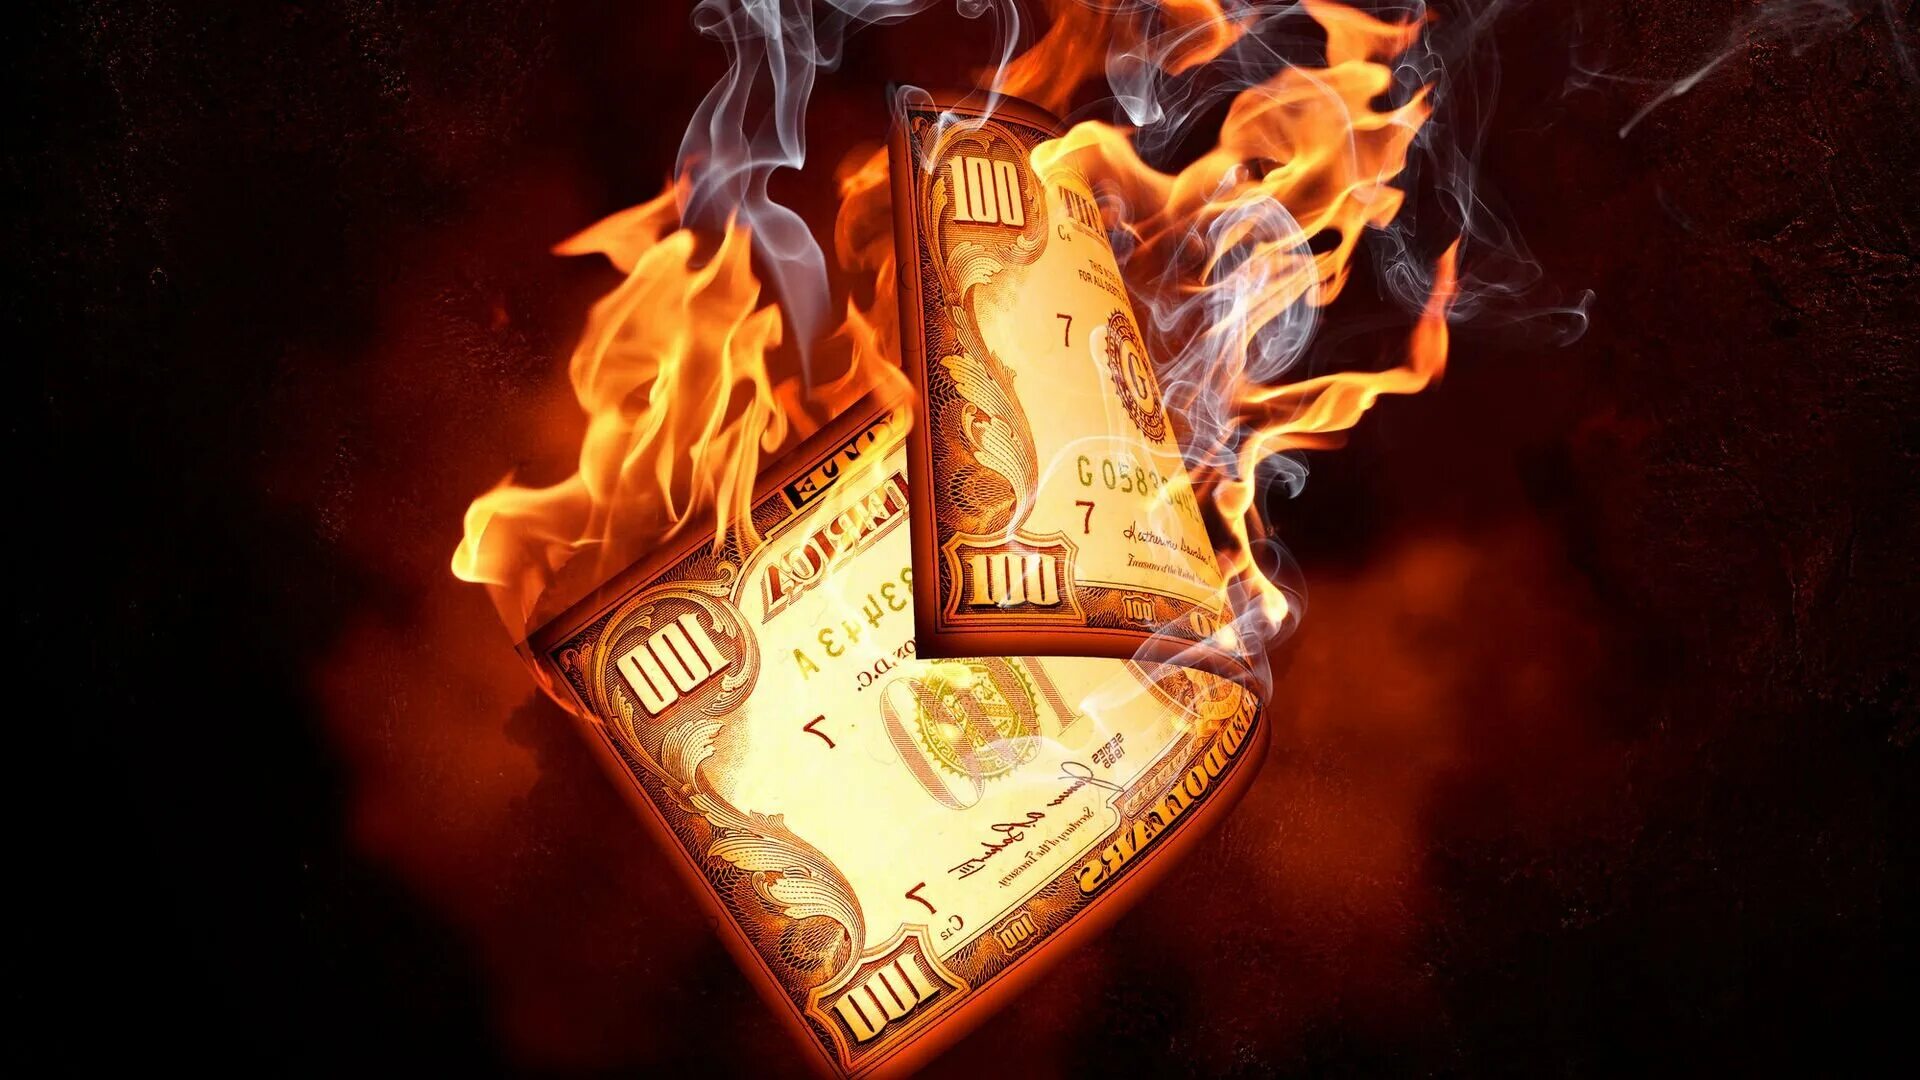 Доллар в огне. Доллар горит. Горящие купюры. Деньги горят в огне. Цветы деньги и огонь